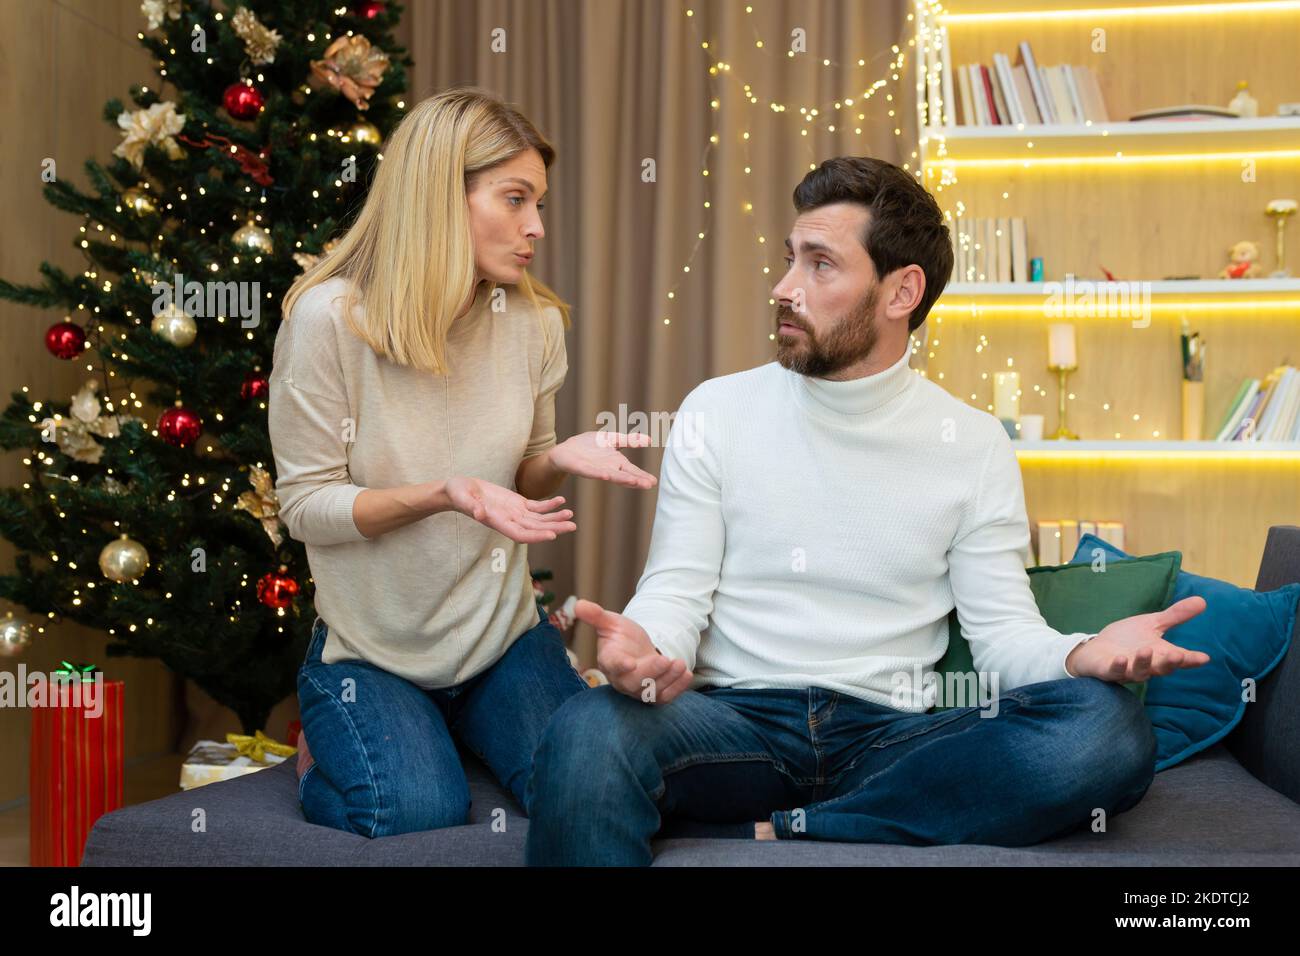 Conflit familial pendant les vacances. Un jeune couple, une famille, un homme et une femme se disputent à Noël. Ils sont assis sur le canapé à la maison près de l'arbre de Noël, criant l'un à l'autre. Banque D'Images